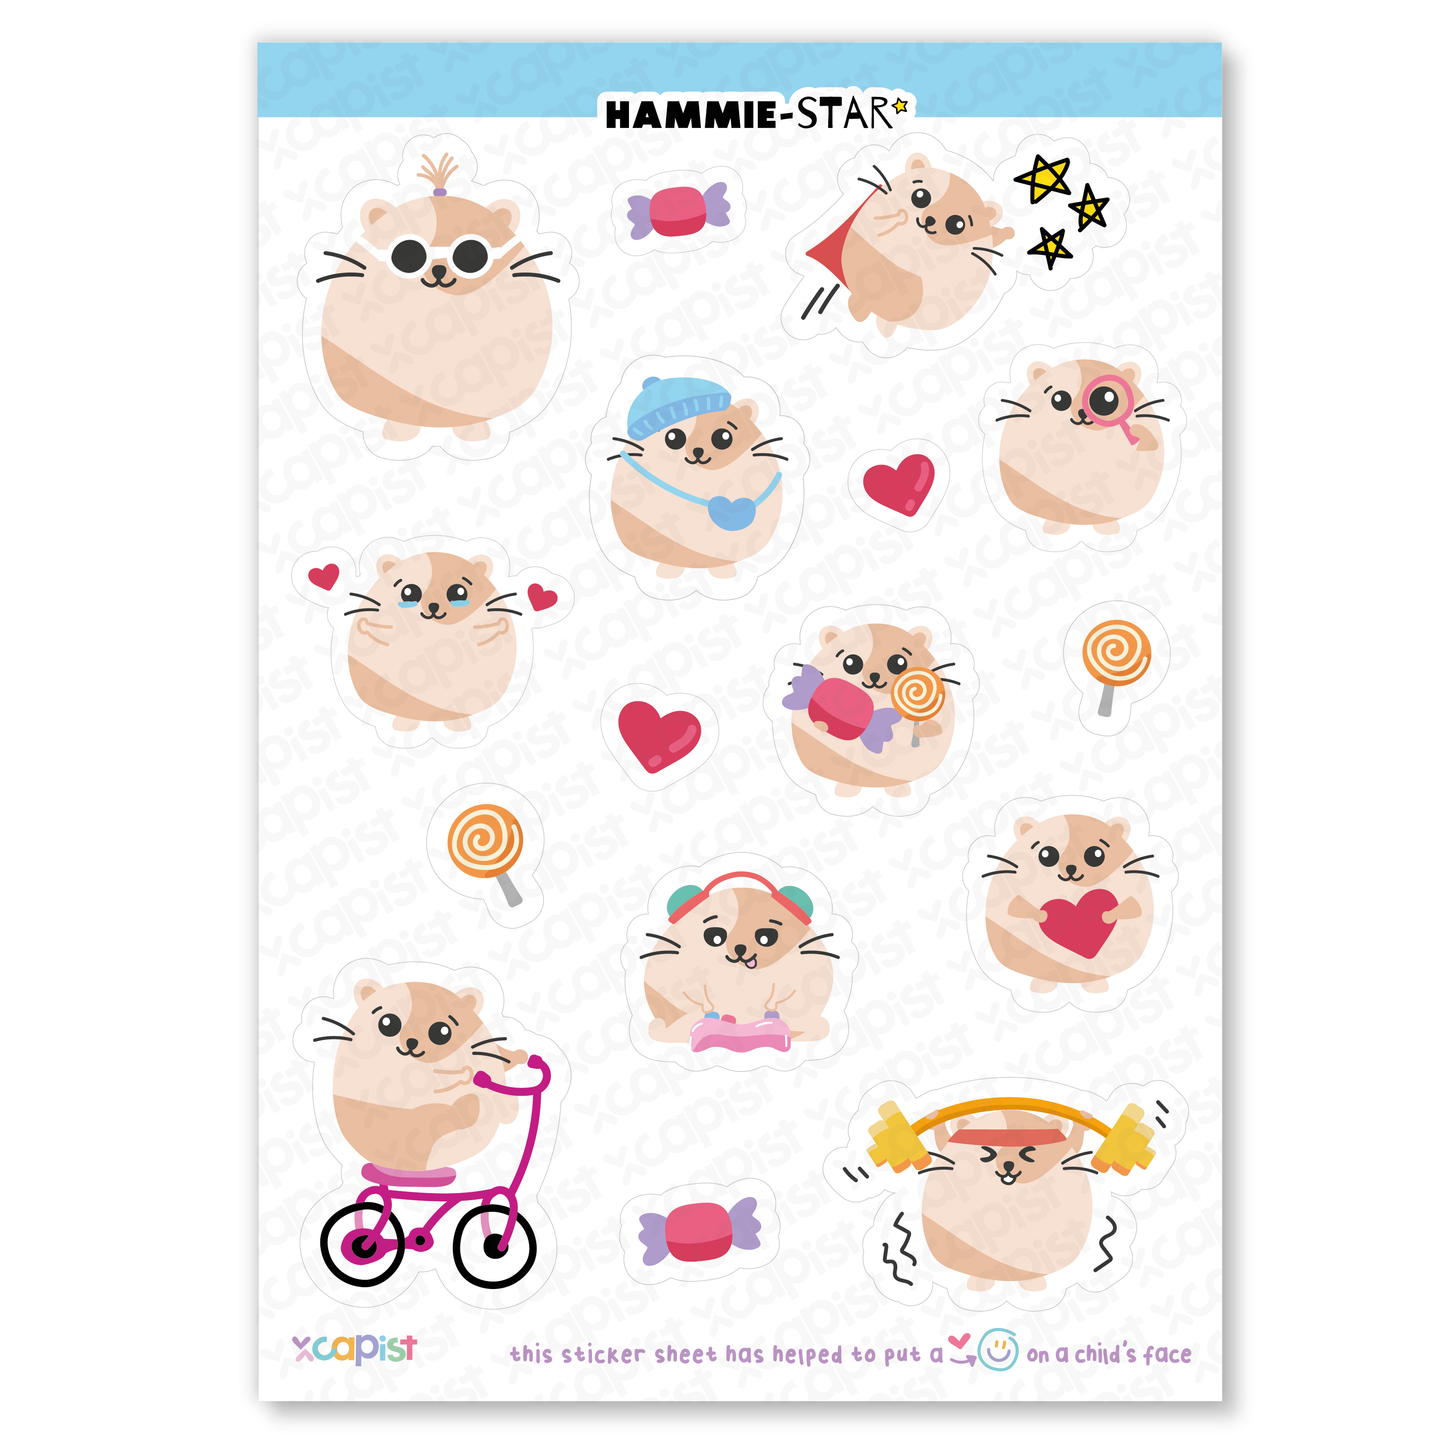 Hammie-Star Sticker Sheet